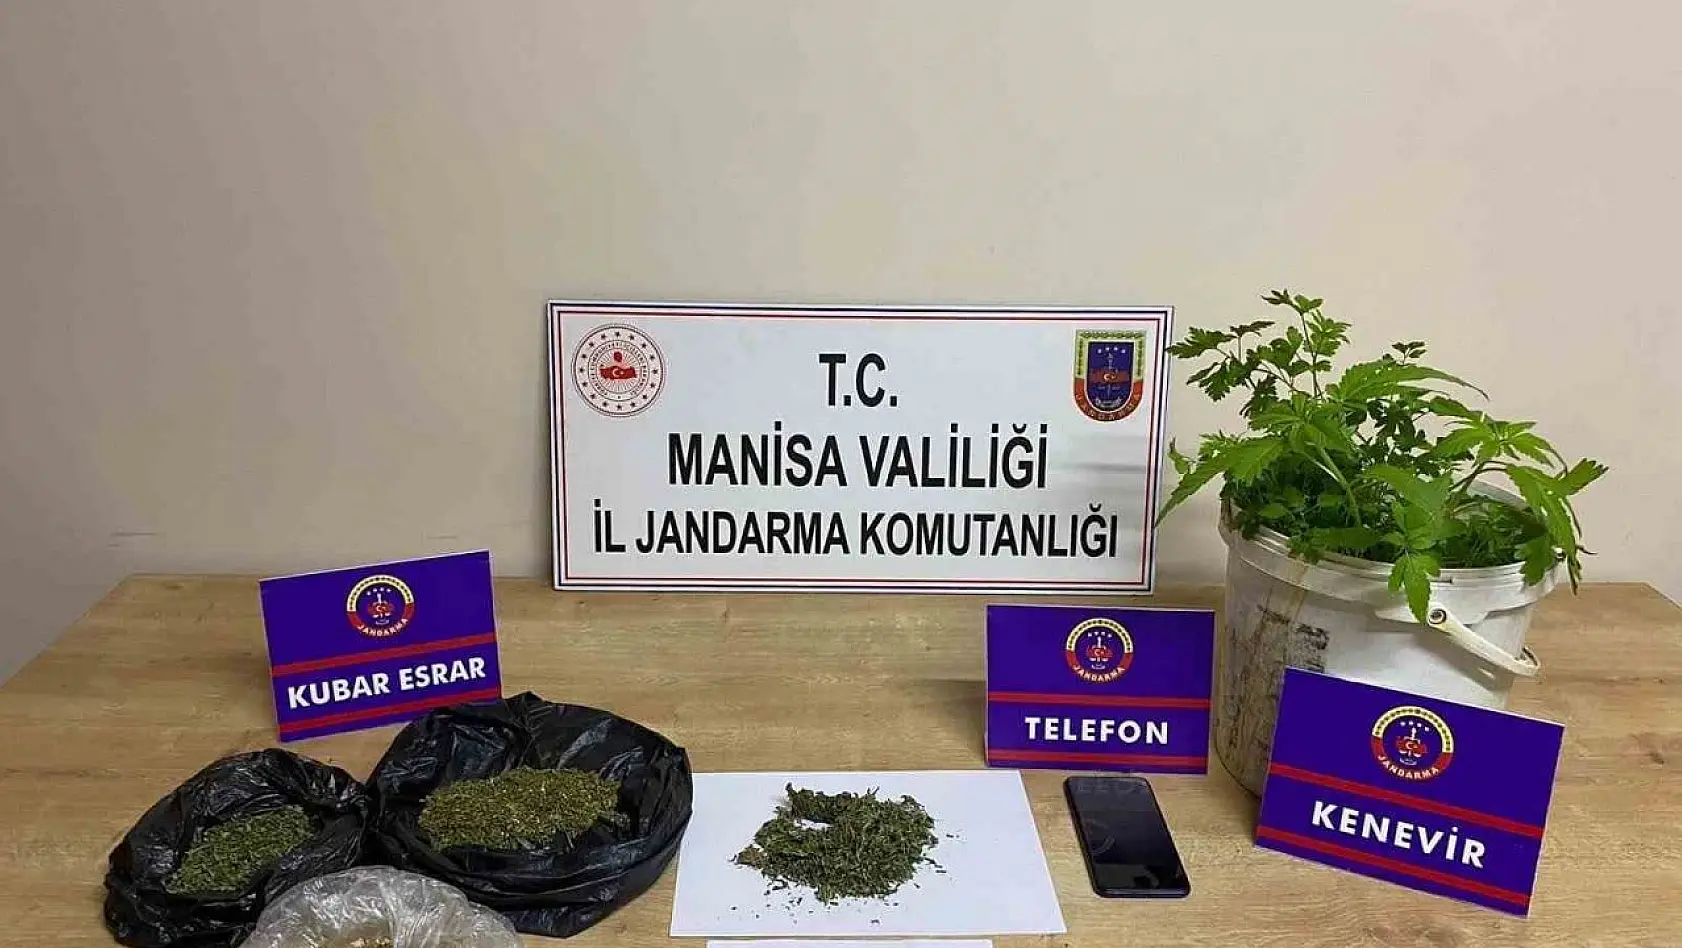 Manisa'da uyuşturucuya darbe: 40 gözaltı